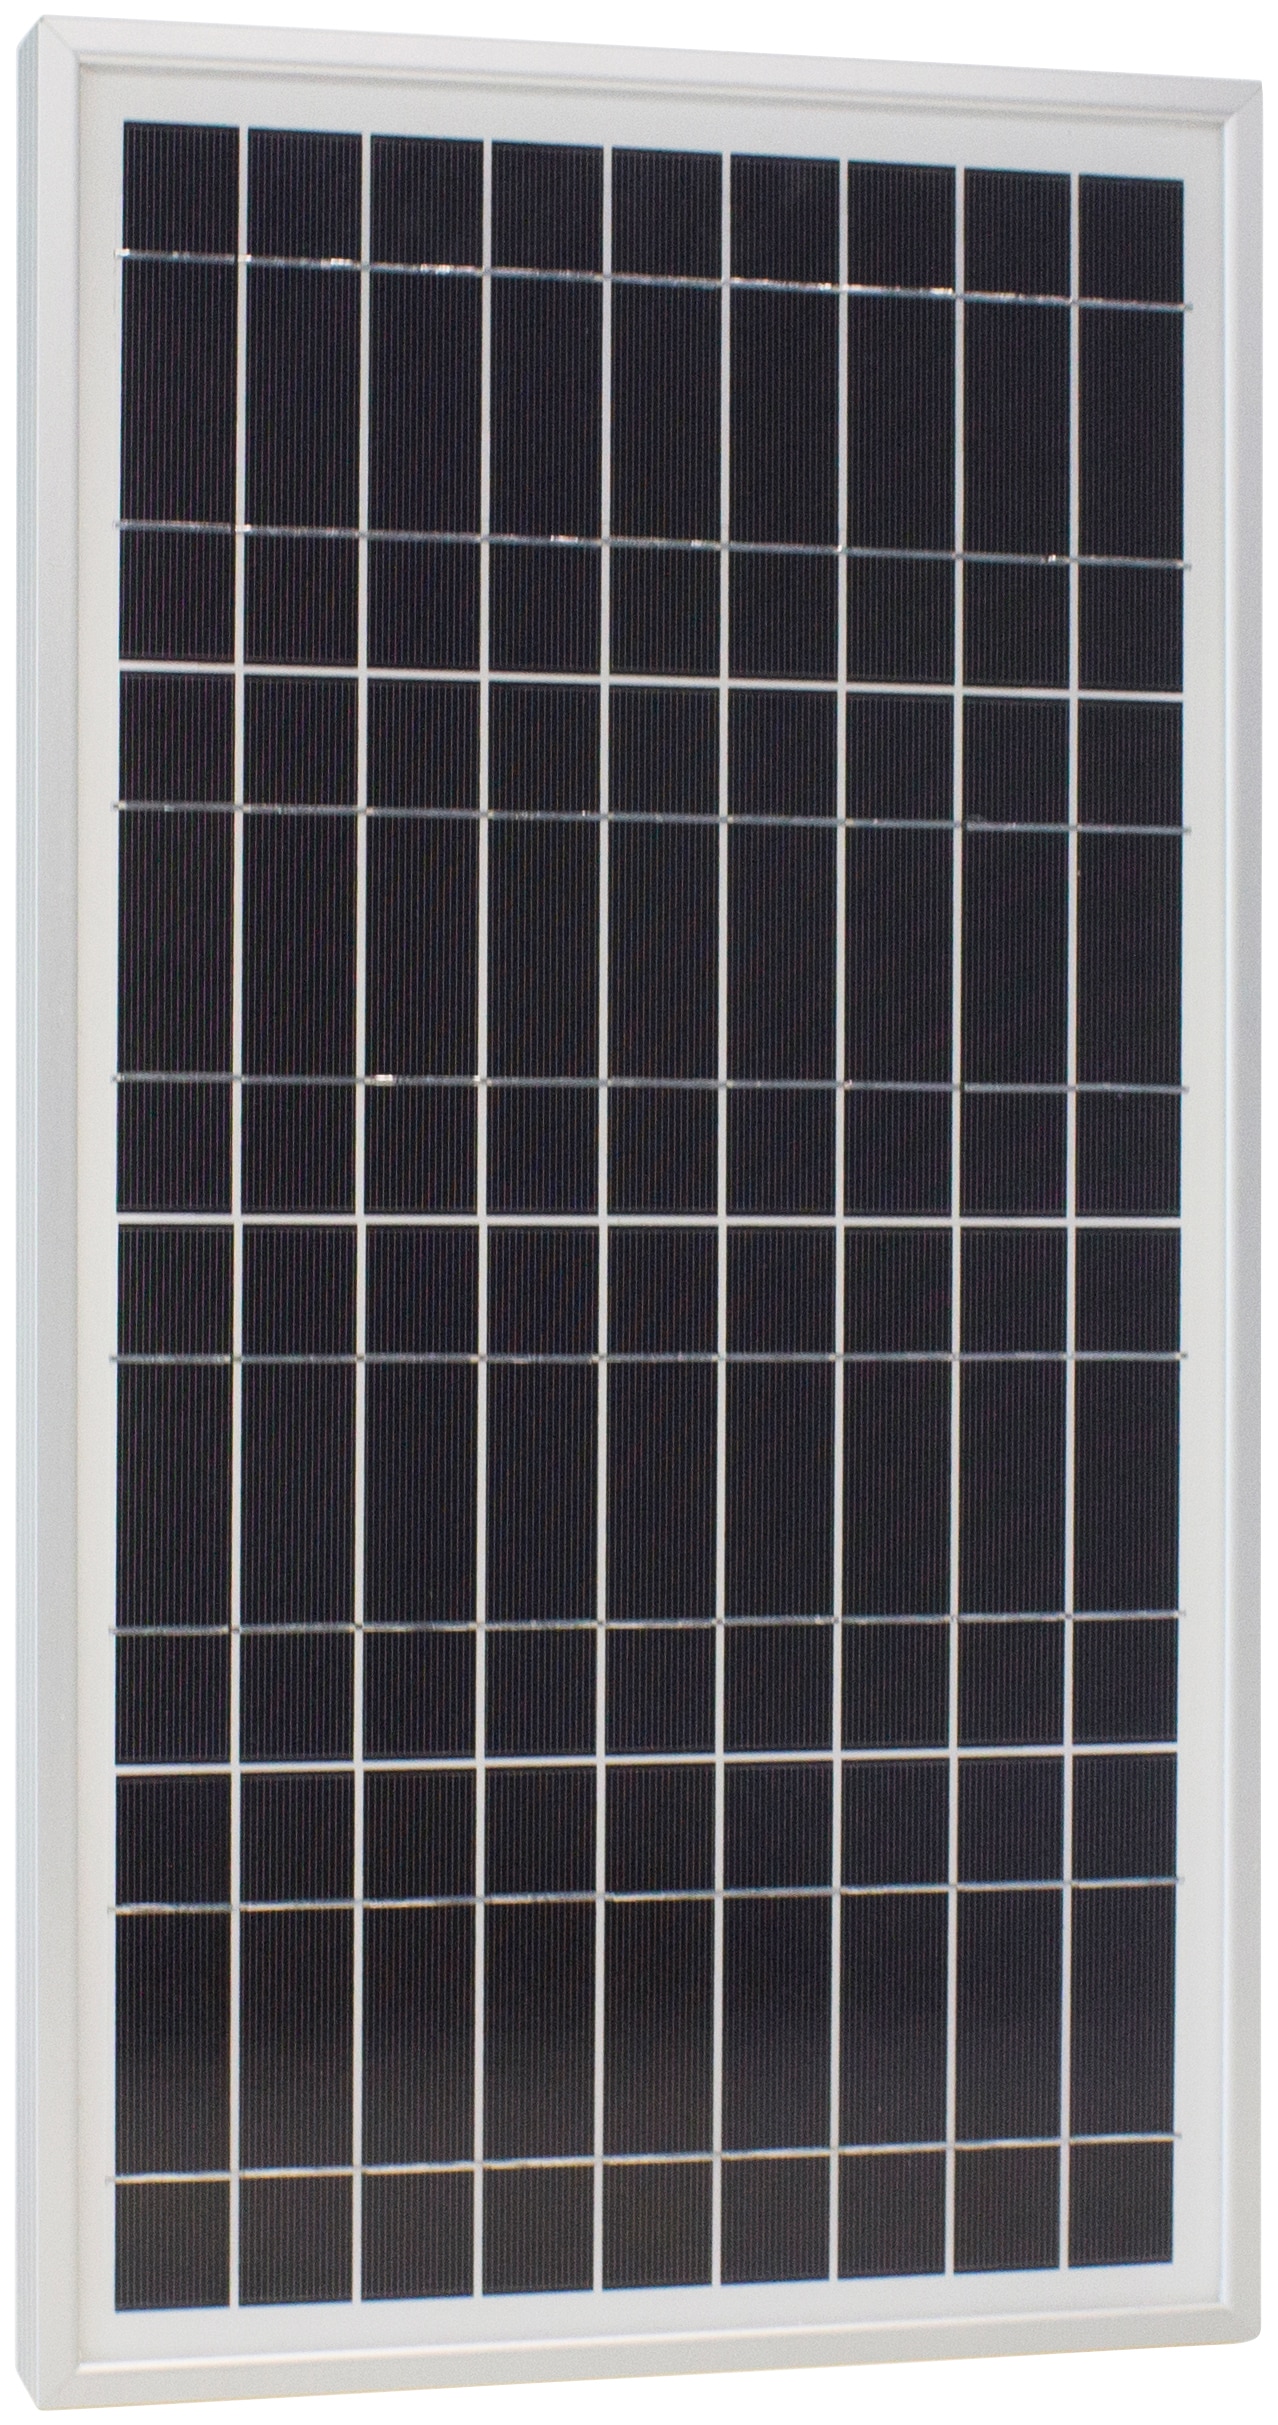 Solarmodul »Sun Plus 20 S«, 12 VDC, IP65 Schutz